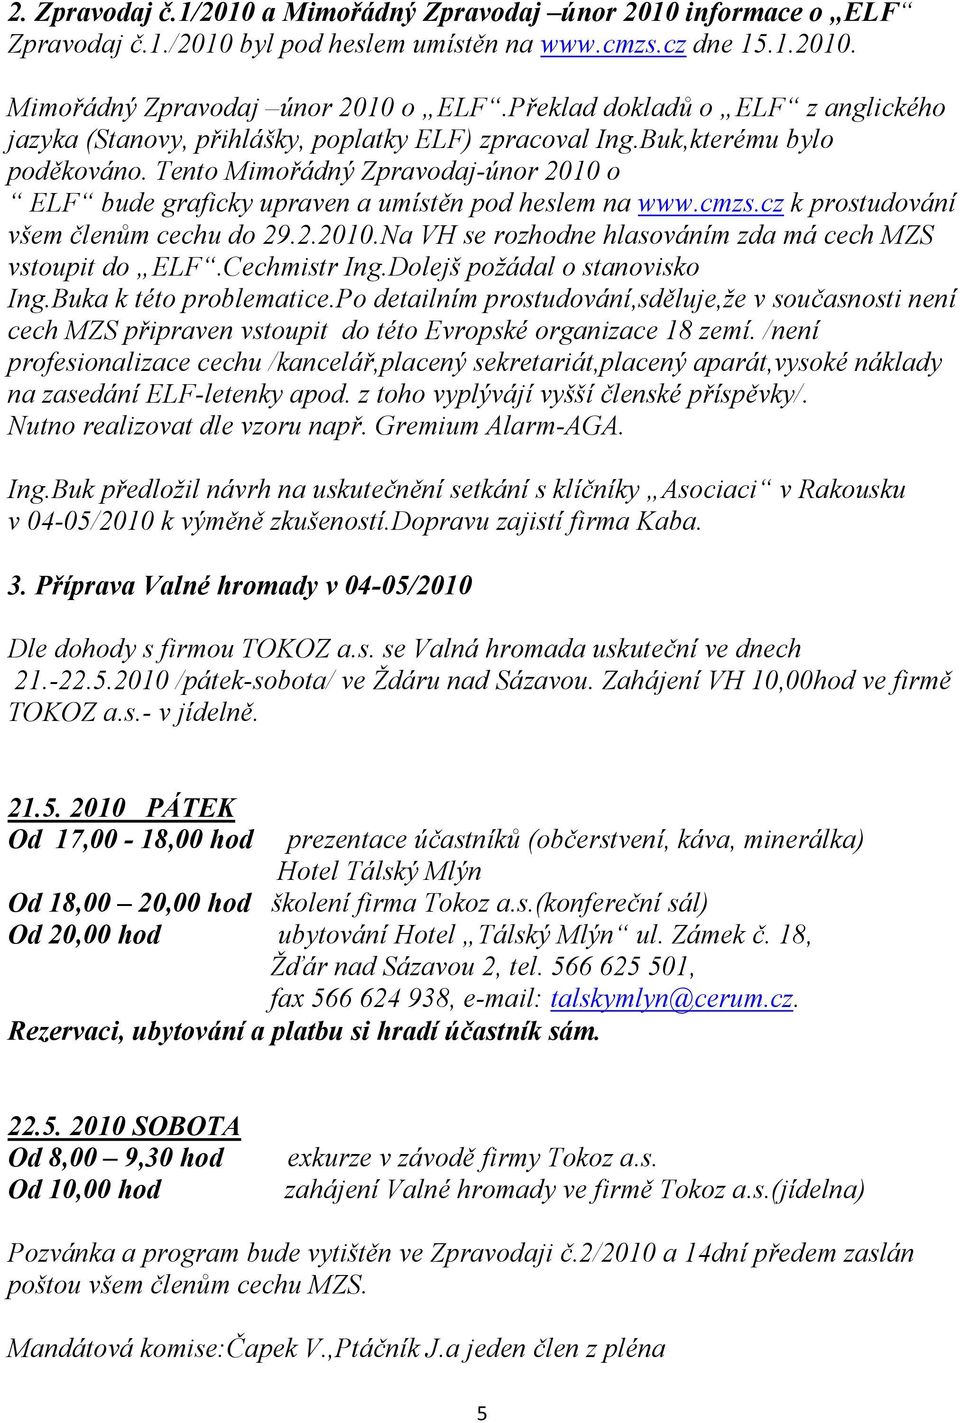 Tento Mimořádný Zpravodaj-únor 2010 o ELF bude graficky upraven a umístěn pod heslem na www.cmzs.cz k prostudování všem členům cechu do 29.2.2010. a VH se rozhodne hlasováním zda má cech MZS vstoupit do ELF.